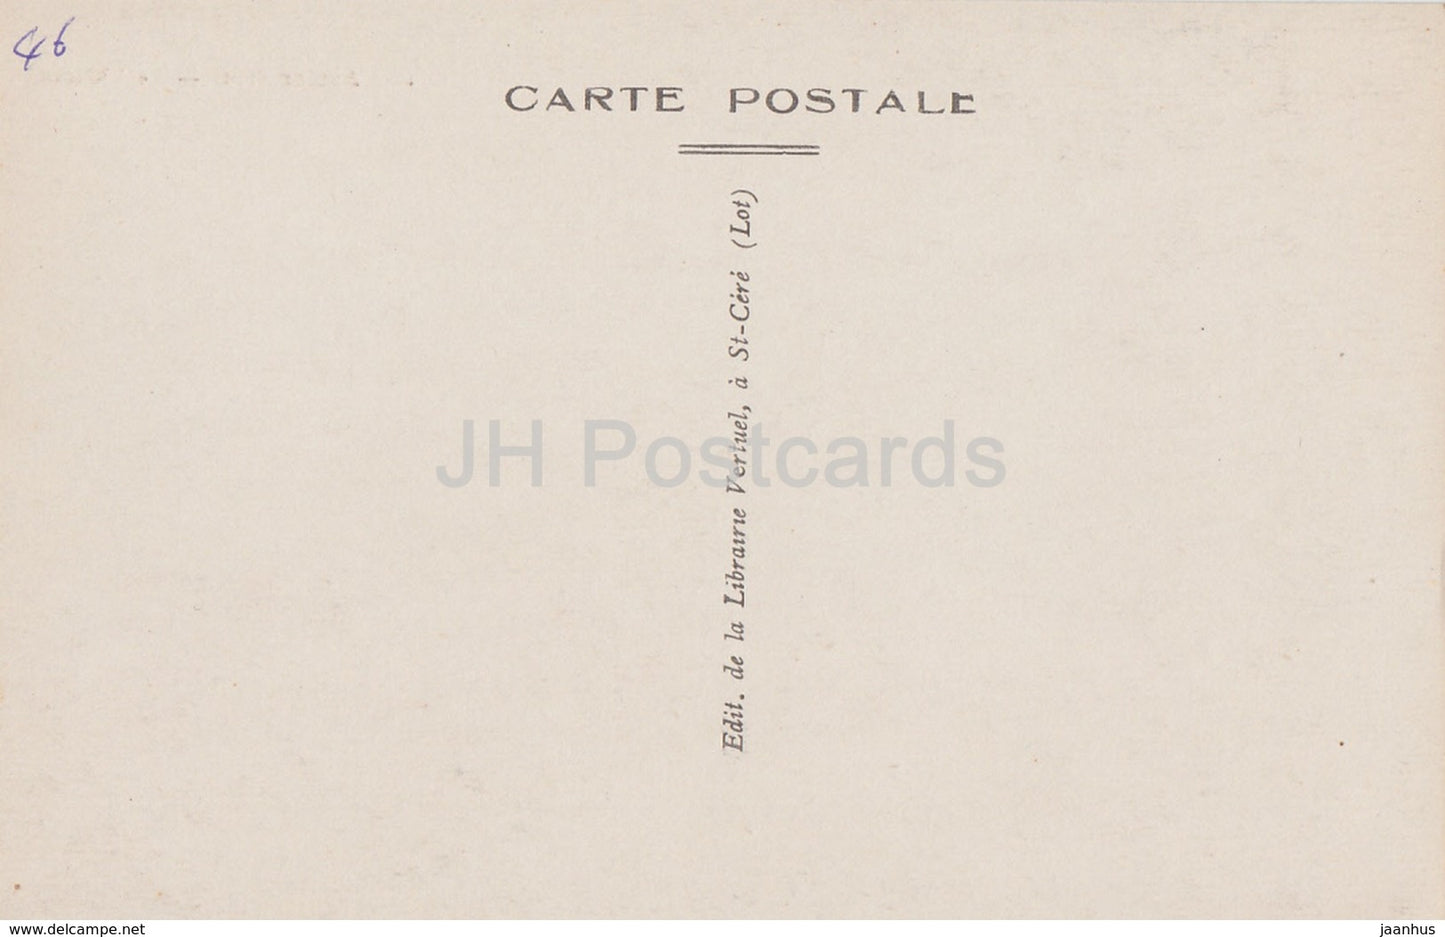 Assier - Le Château - château - 11 - carte postale ancienne - France - inutilisée